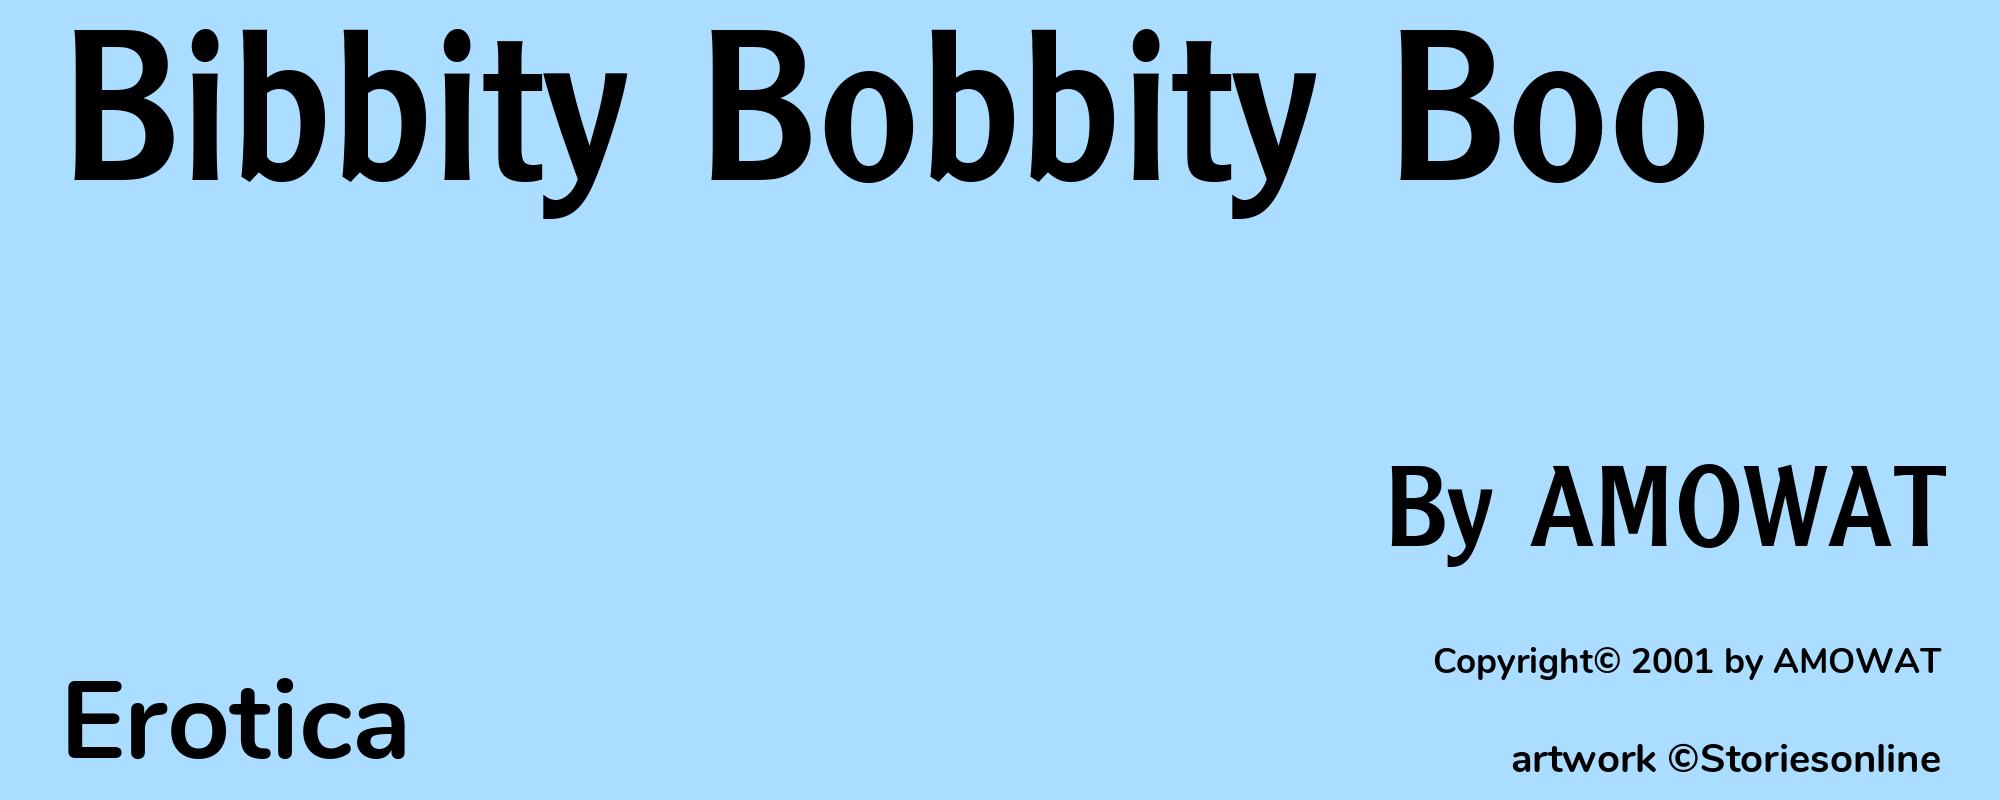 Bibbity Bobbity Boo - Cover